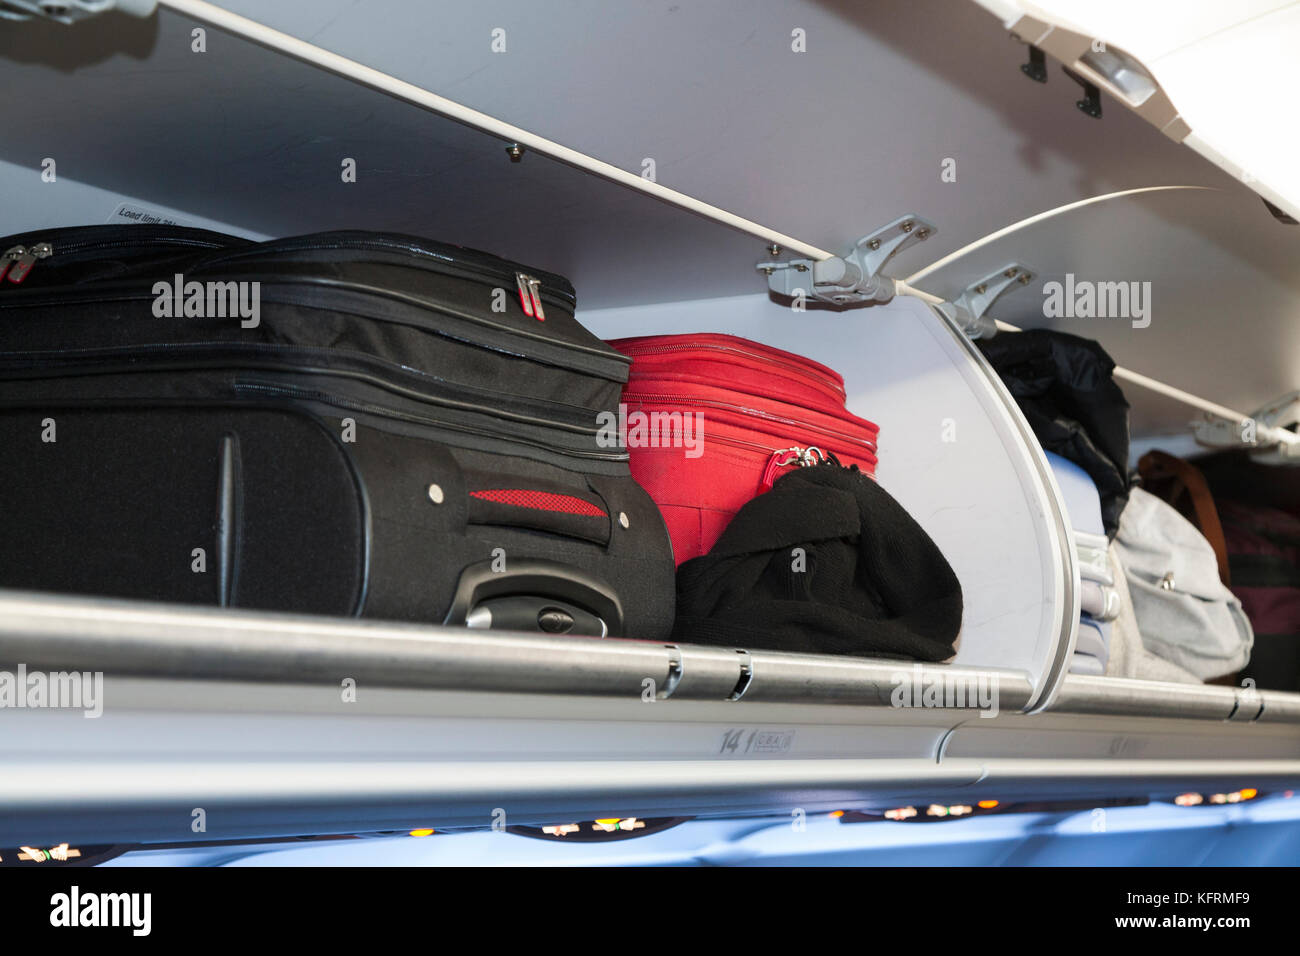 Sobrecarga de pasajeros lockers locker / / compartimento compartimentos para la estiba de bolsas de equipaje de cabina de pasajeros; BA / Portugal vuelo de British Airways. (76) Foto de stock